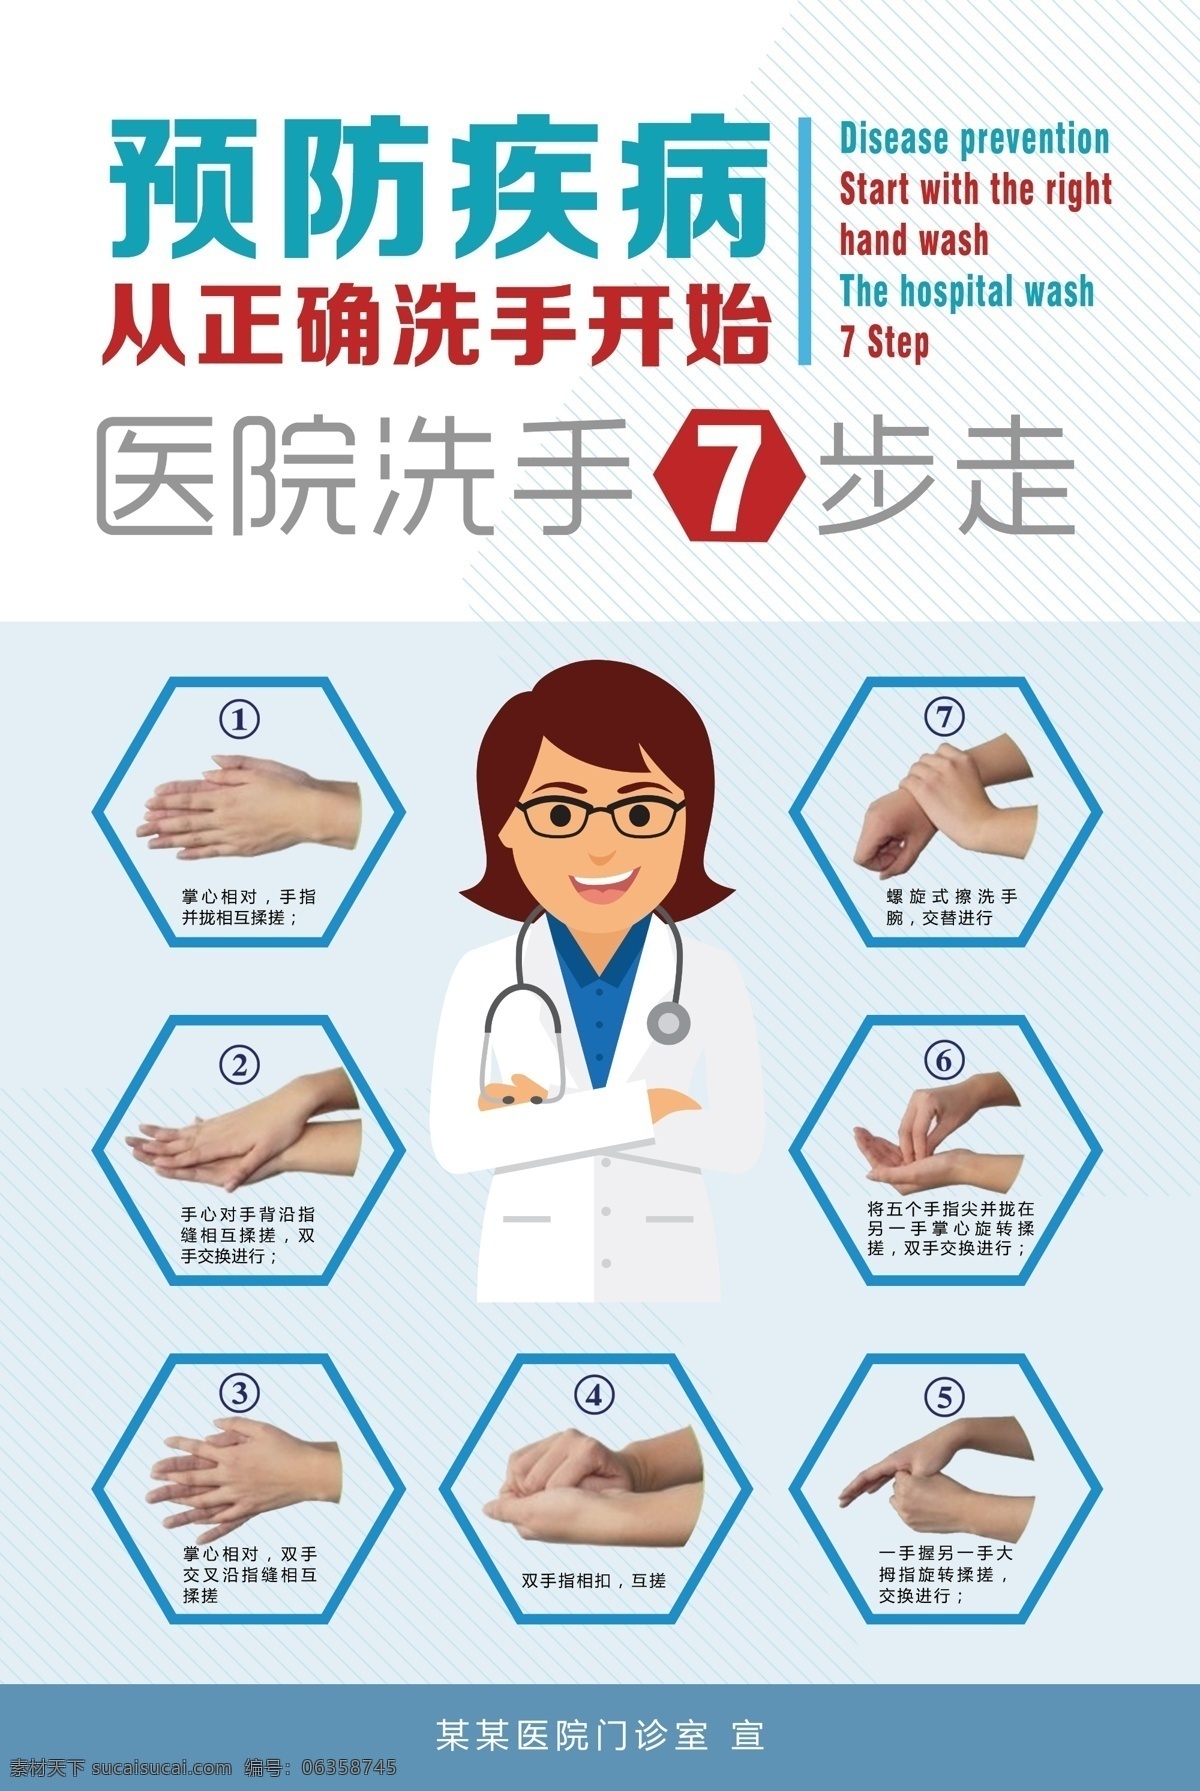 医院海报图片 预防 疾病 正确洗手 7步洗手 医生 漫画 医疗